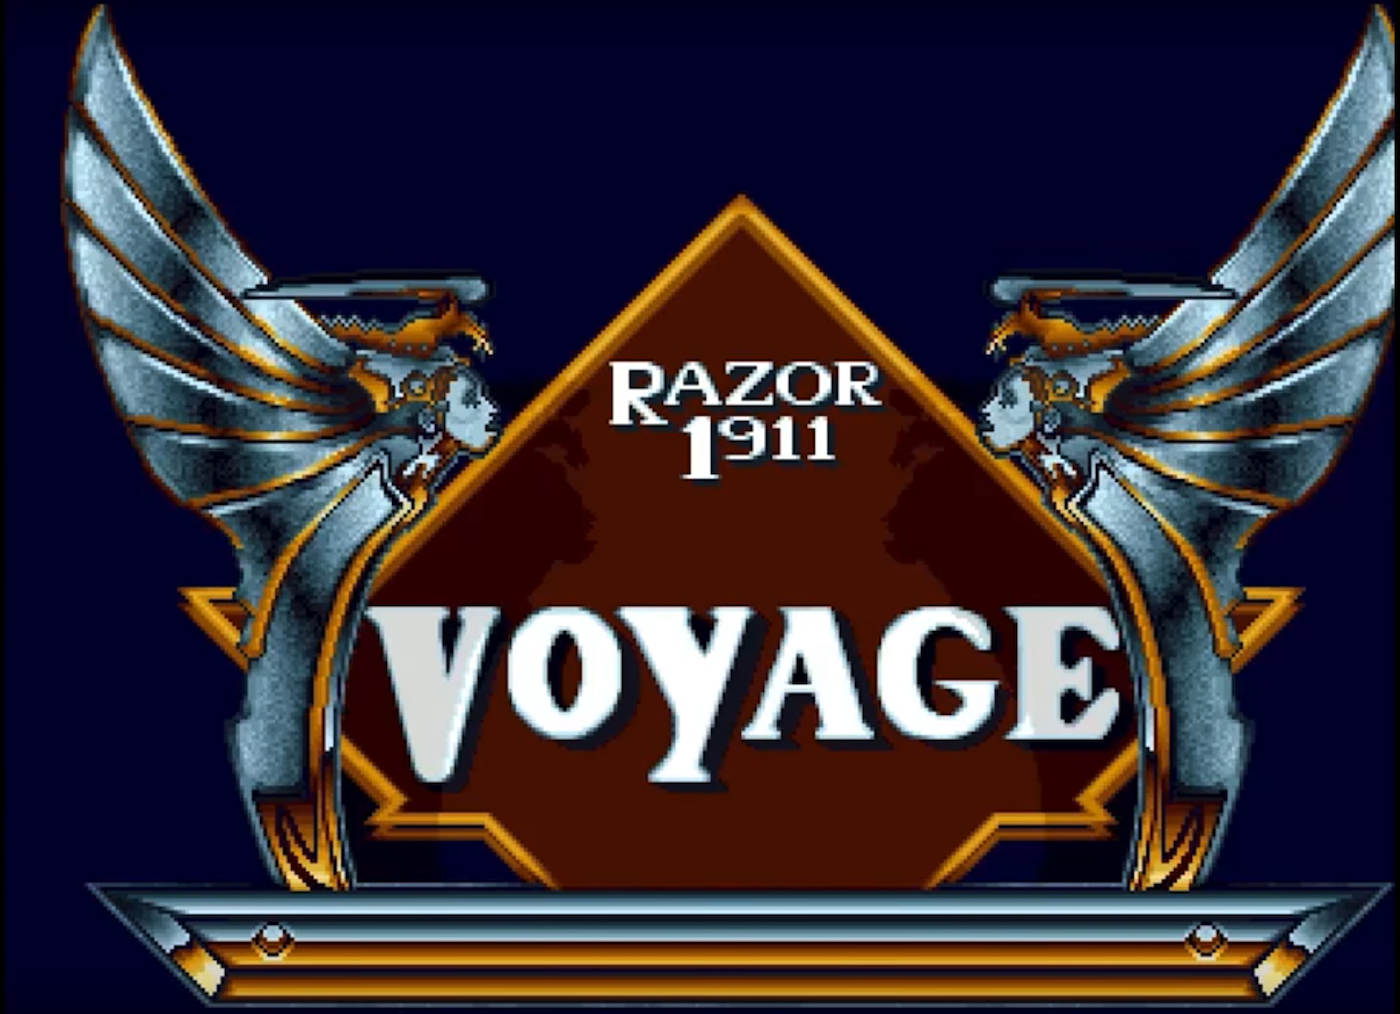 voyage, Razor 1911